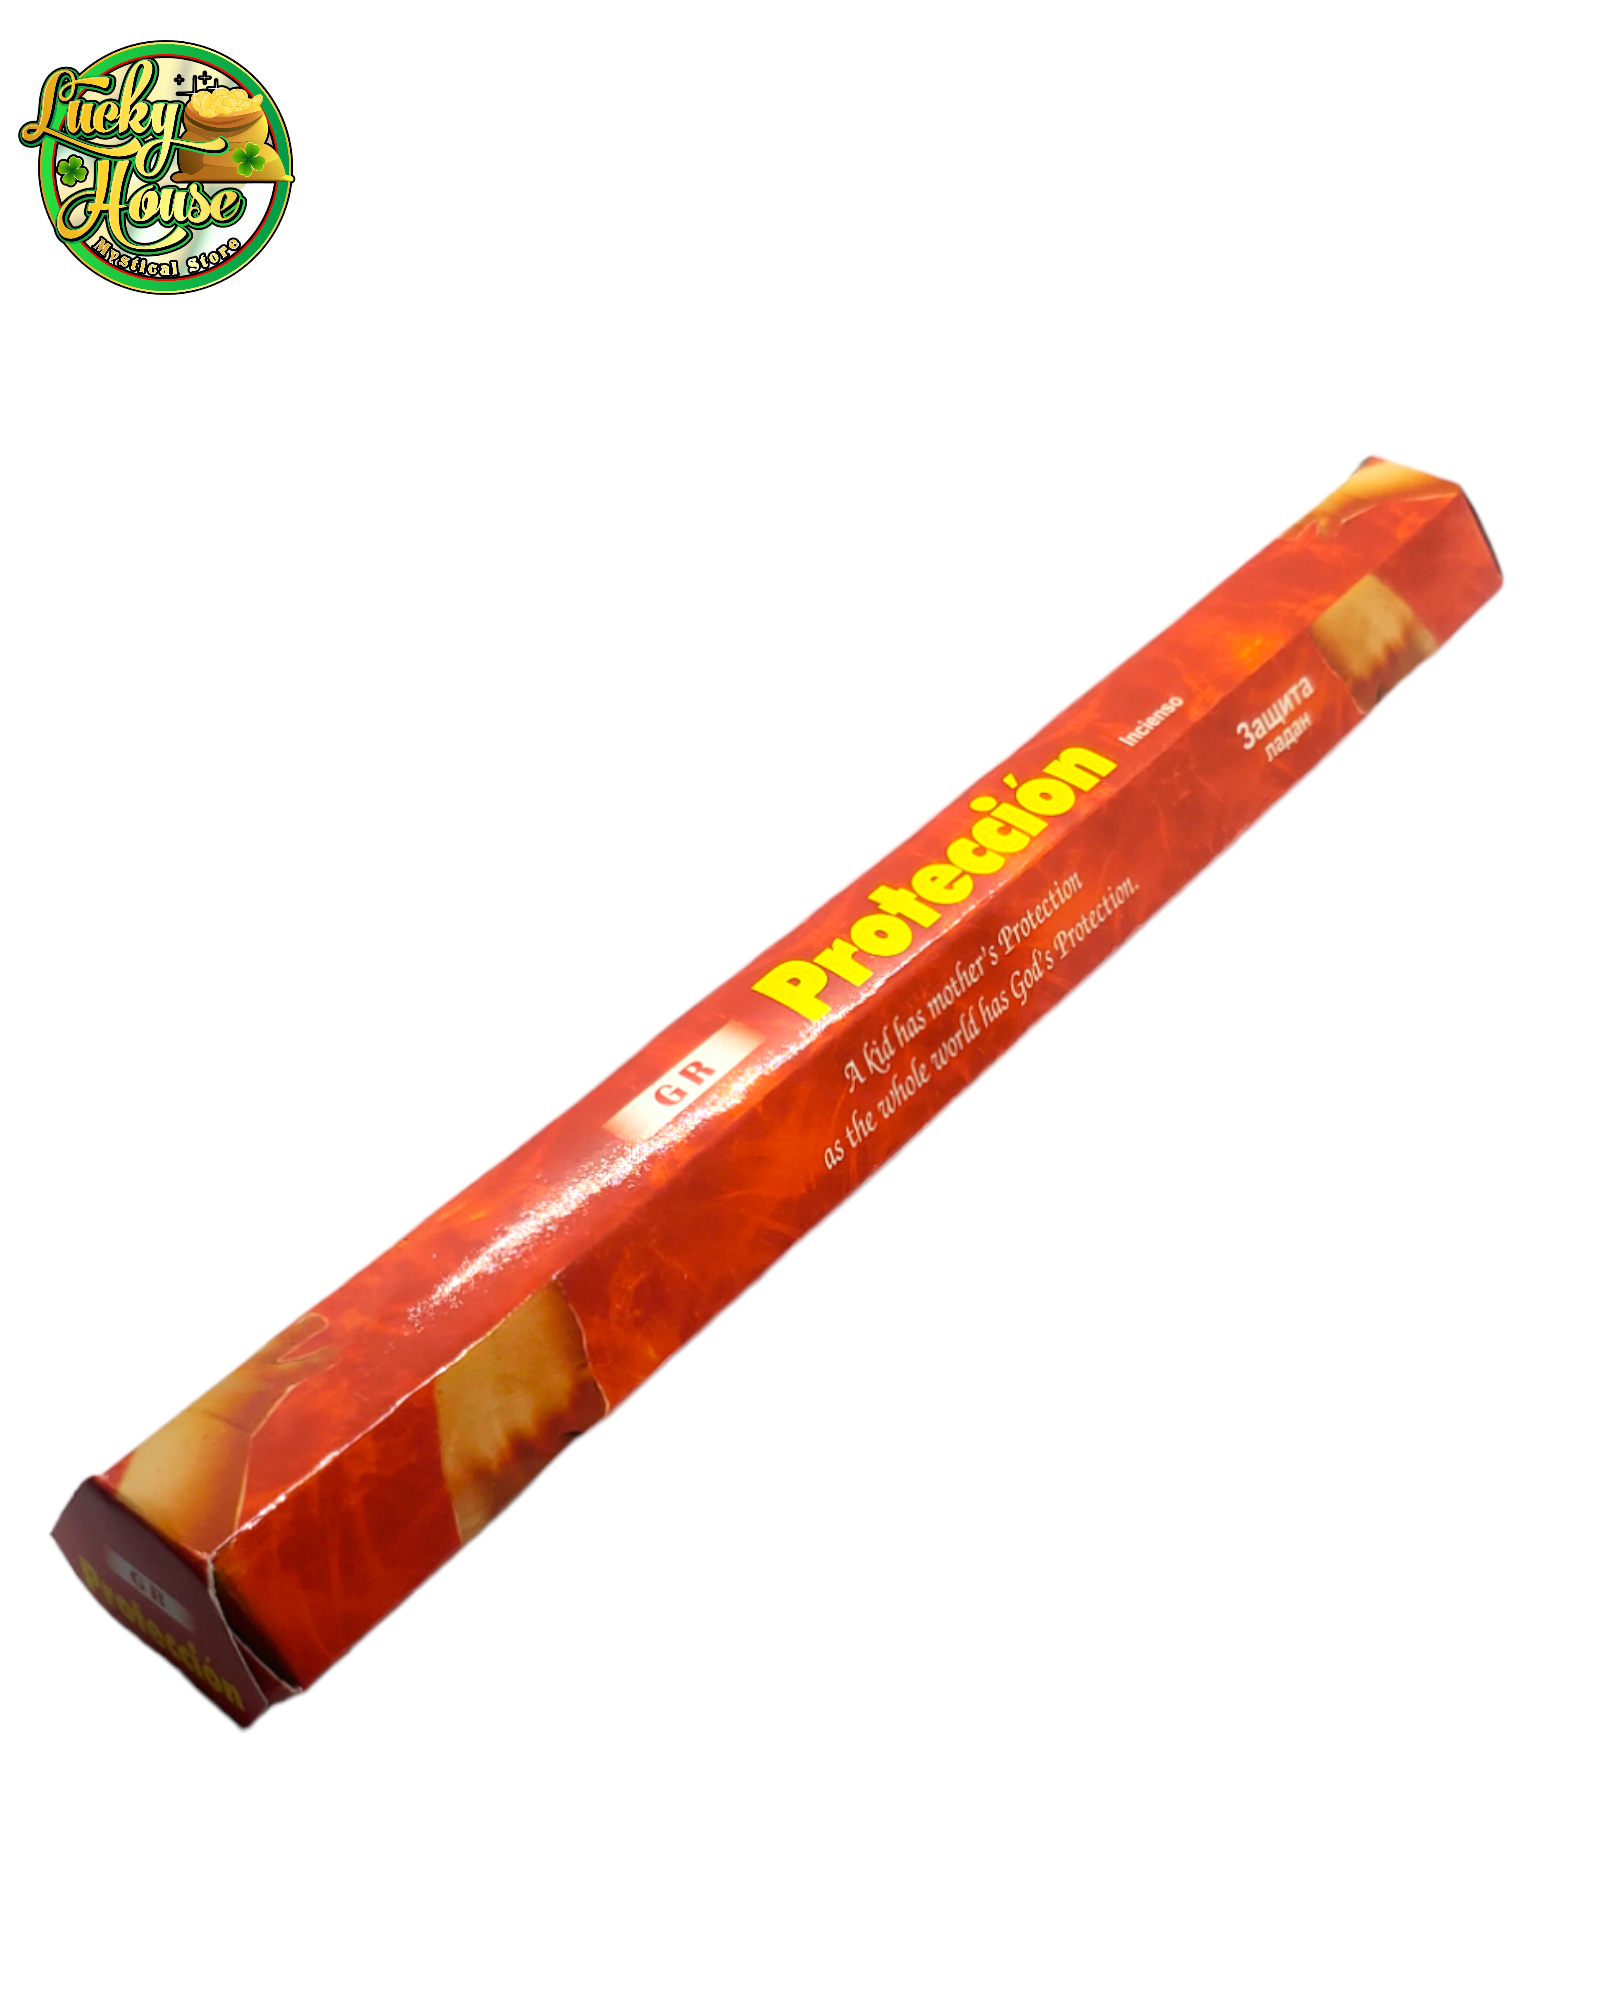 Proteccion Incense Sticks